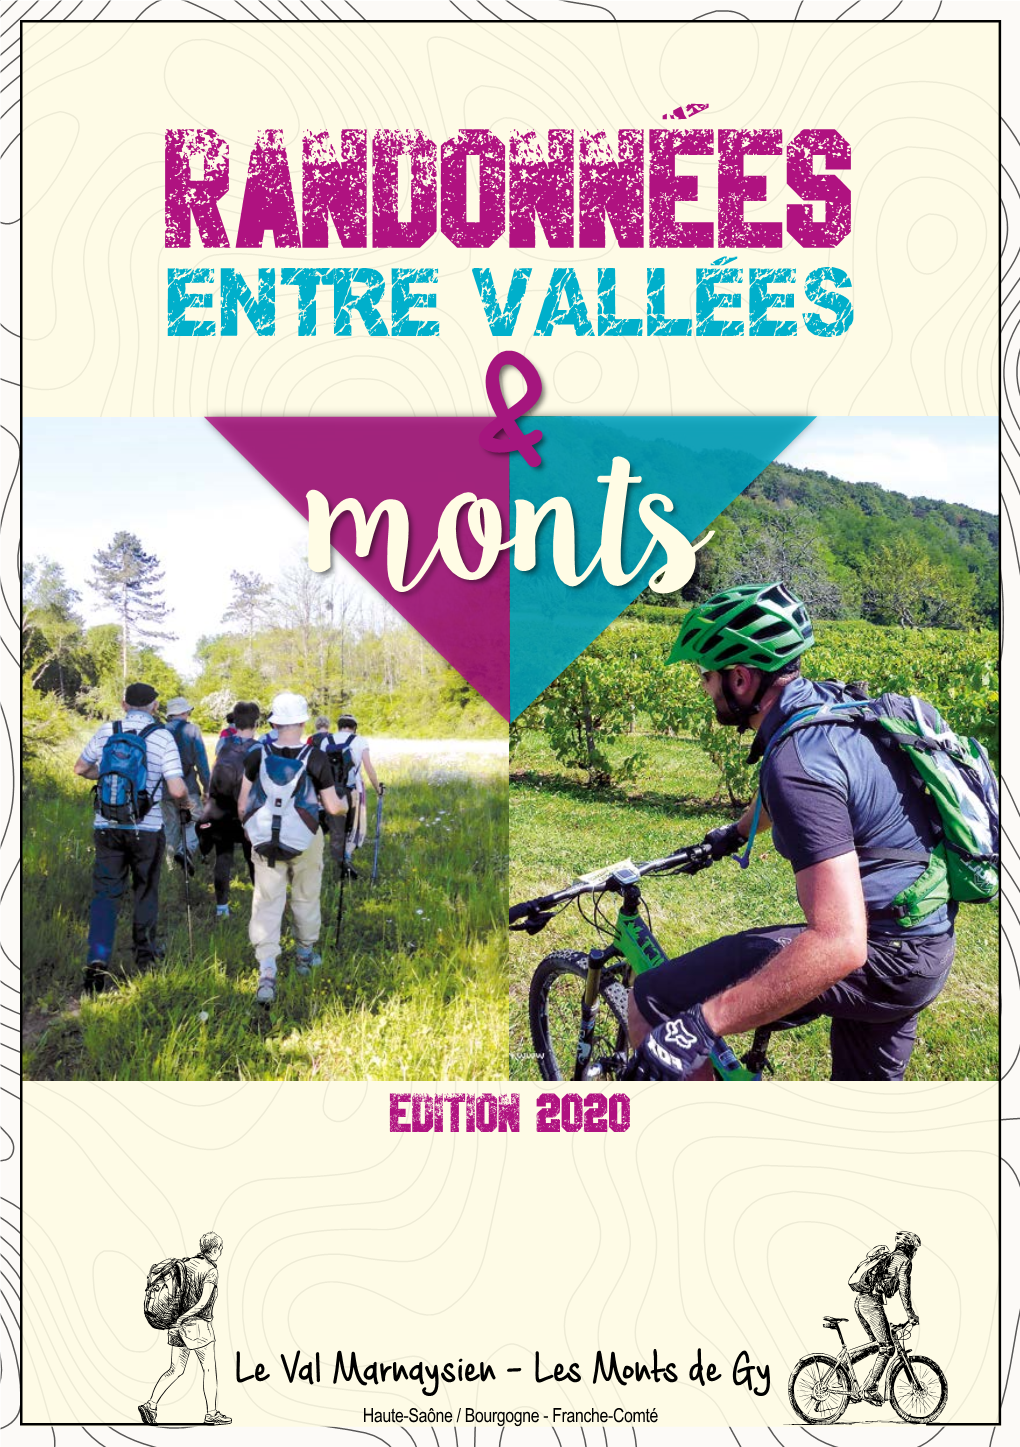 Le Val Marnaysien - Les Monts De Gy Haute-Saône / Bourgogne - Franche-Comté Bienvenue